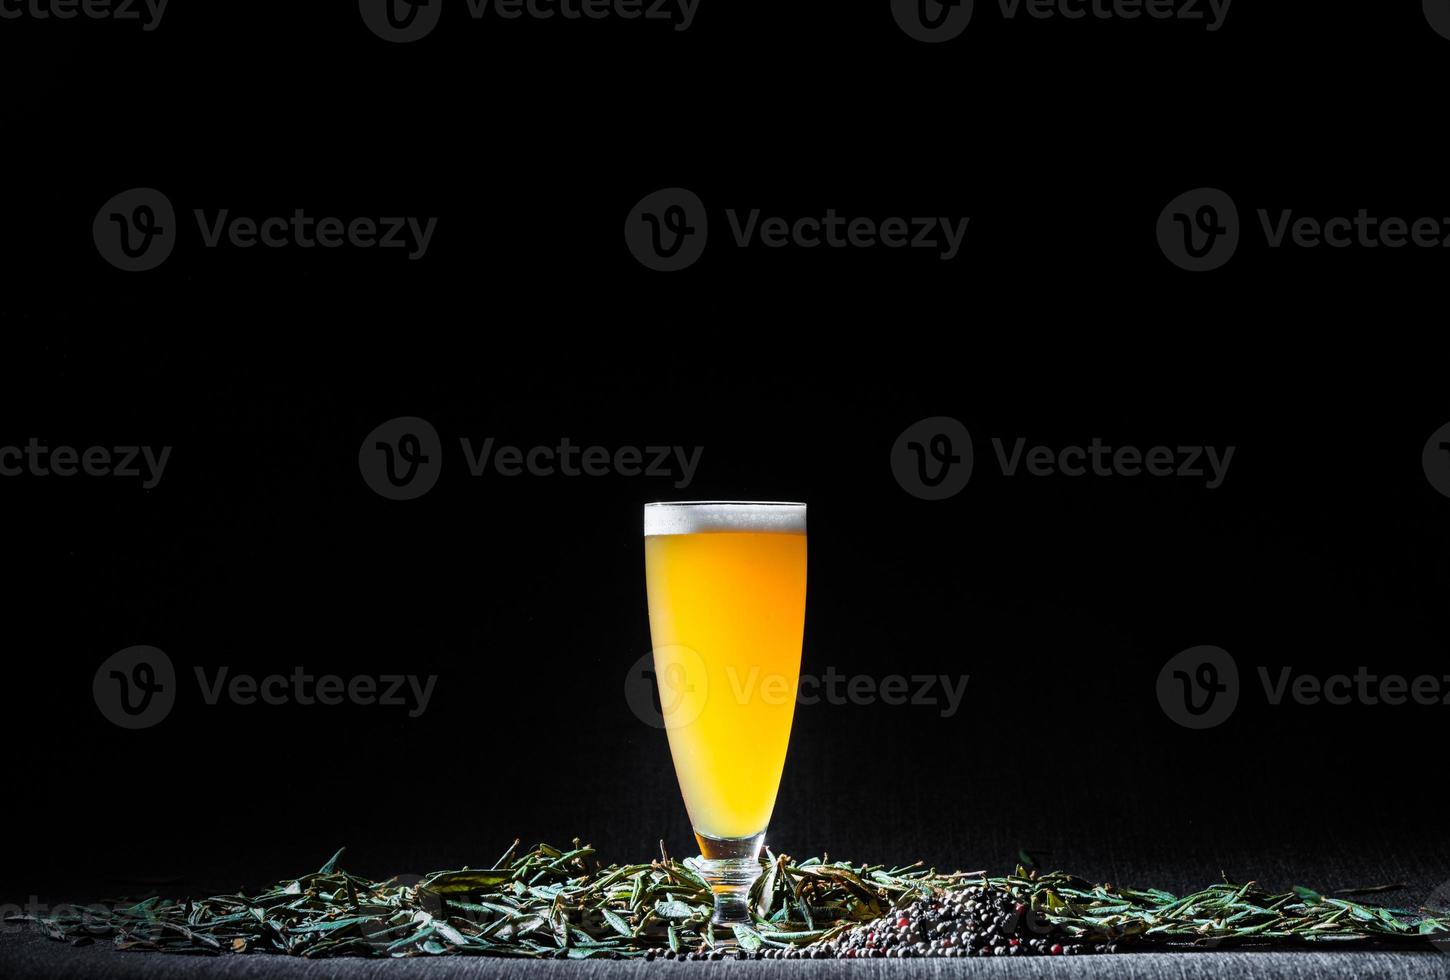 cerveja caseira nebulosa picante com pimenta e chá de labrador foto